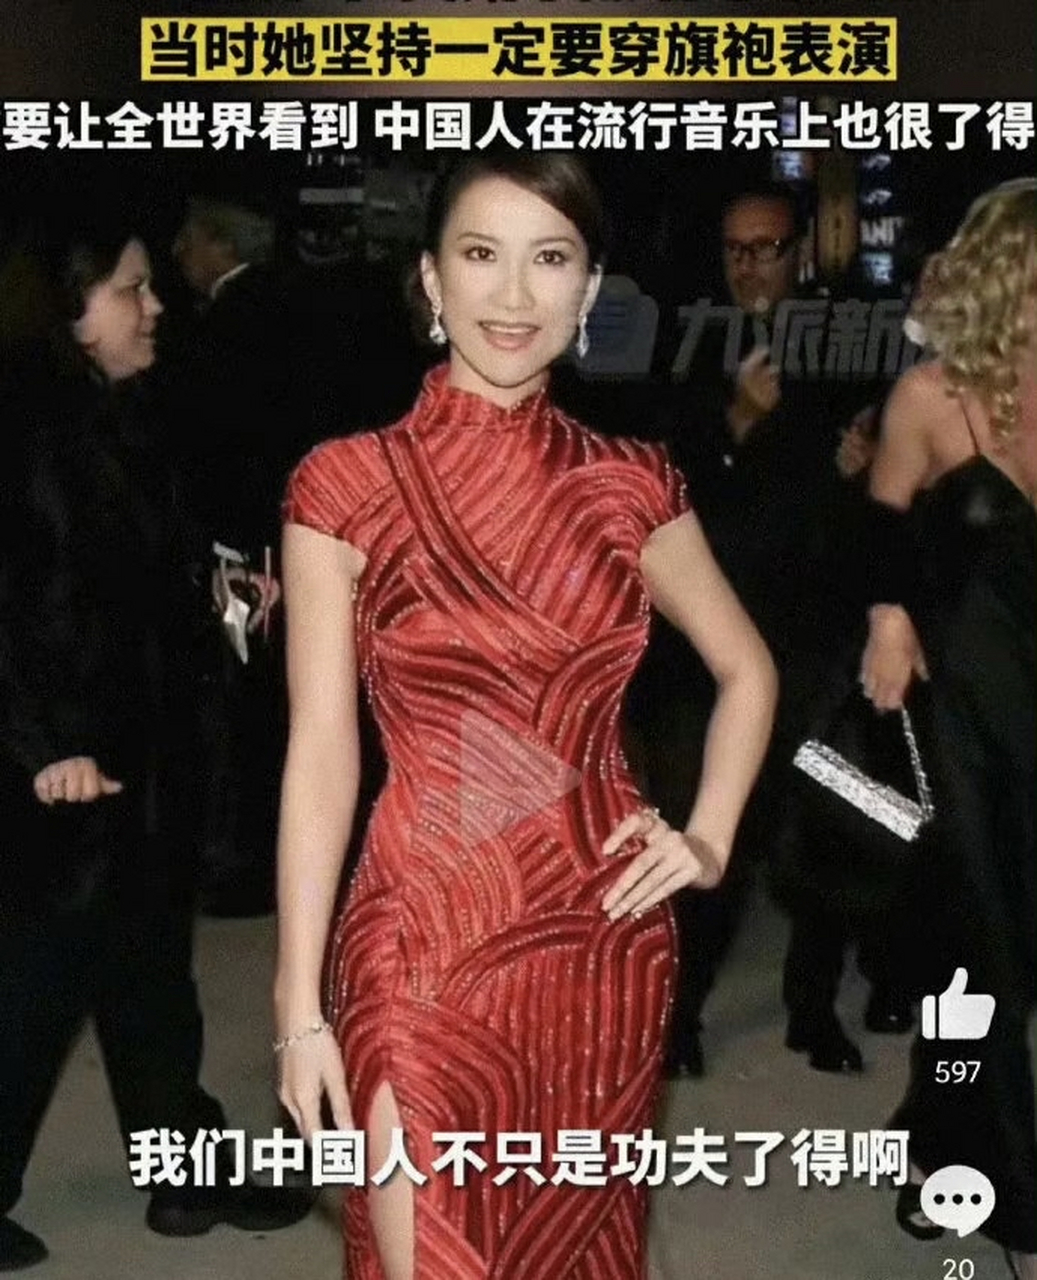 2001,李玟去奥斯卡献唱,是中国人第一次登上奥斯卡舞台,也是目前唯一